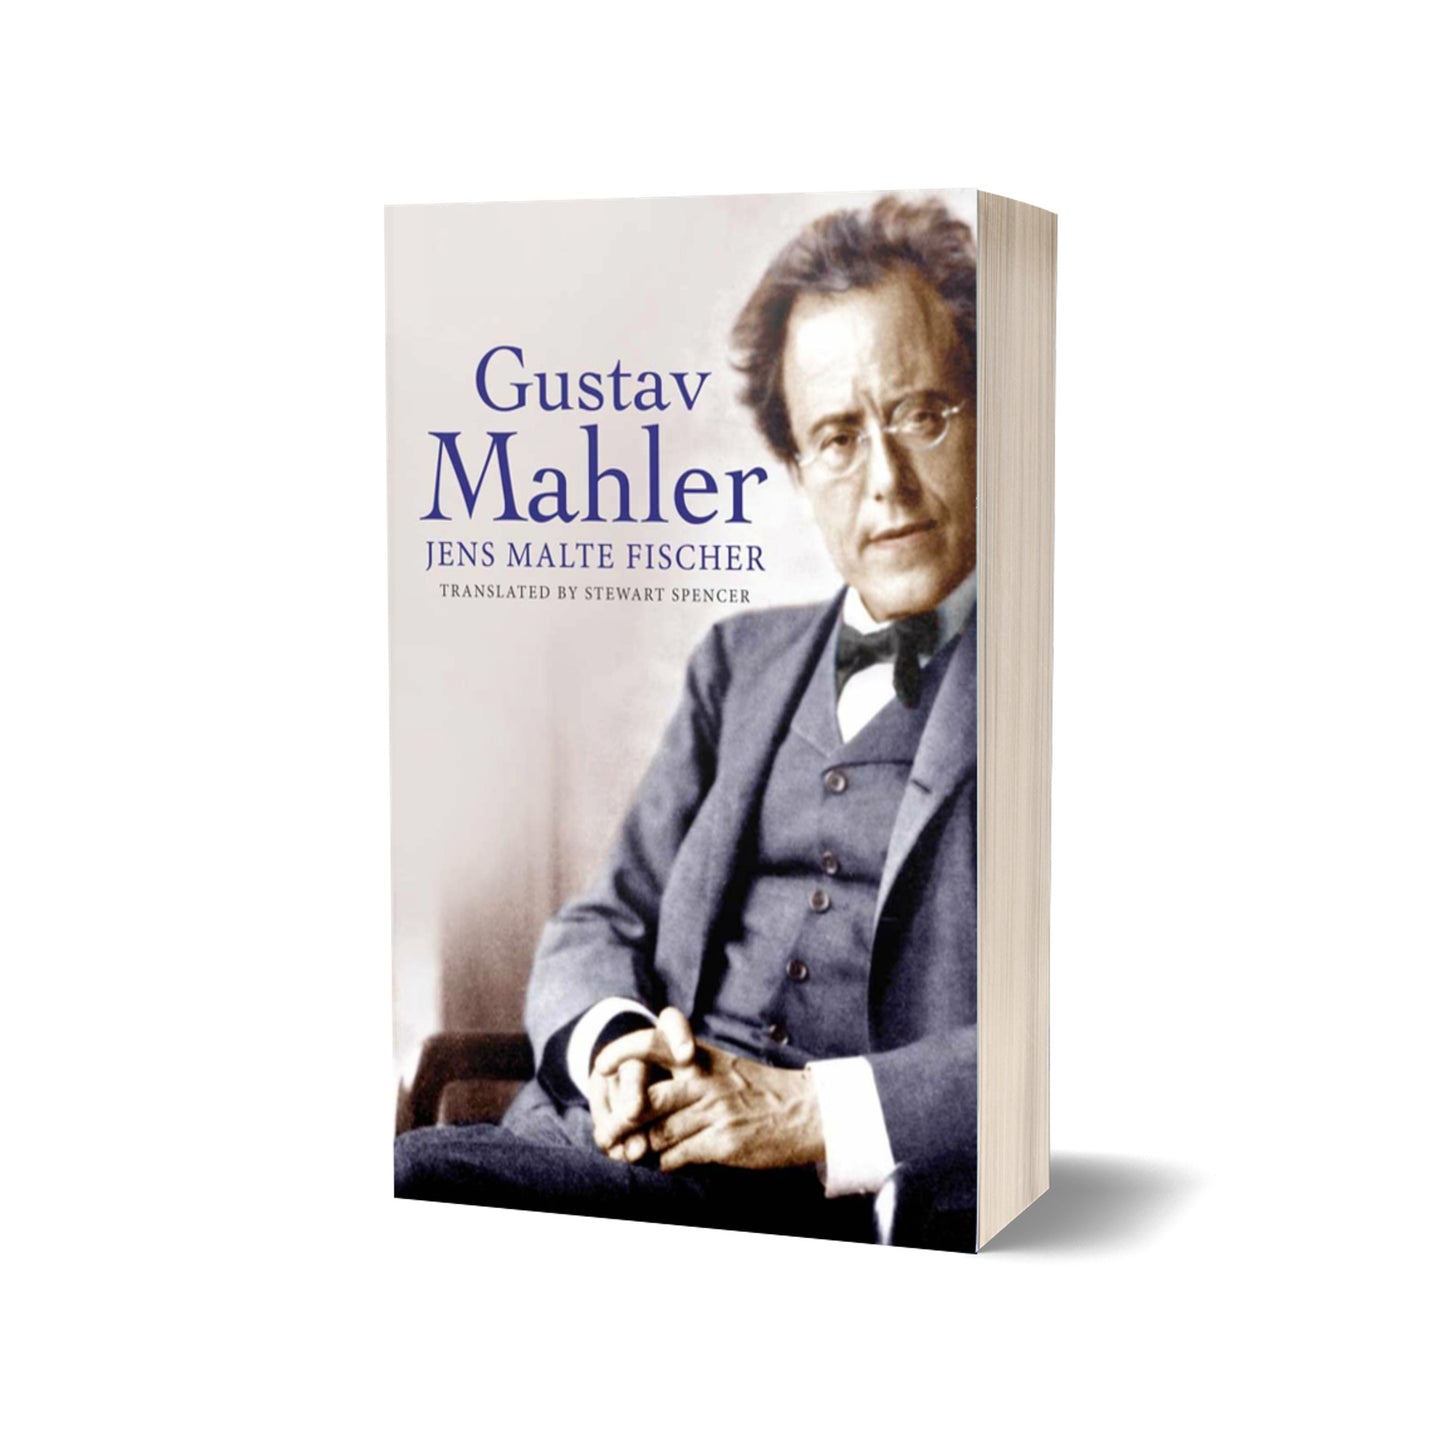 Gustav Mahler, Fischer